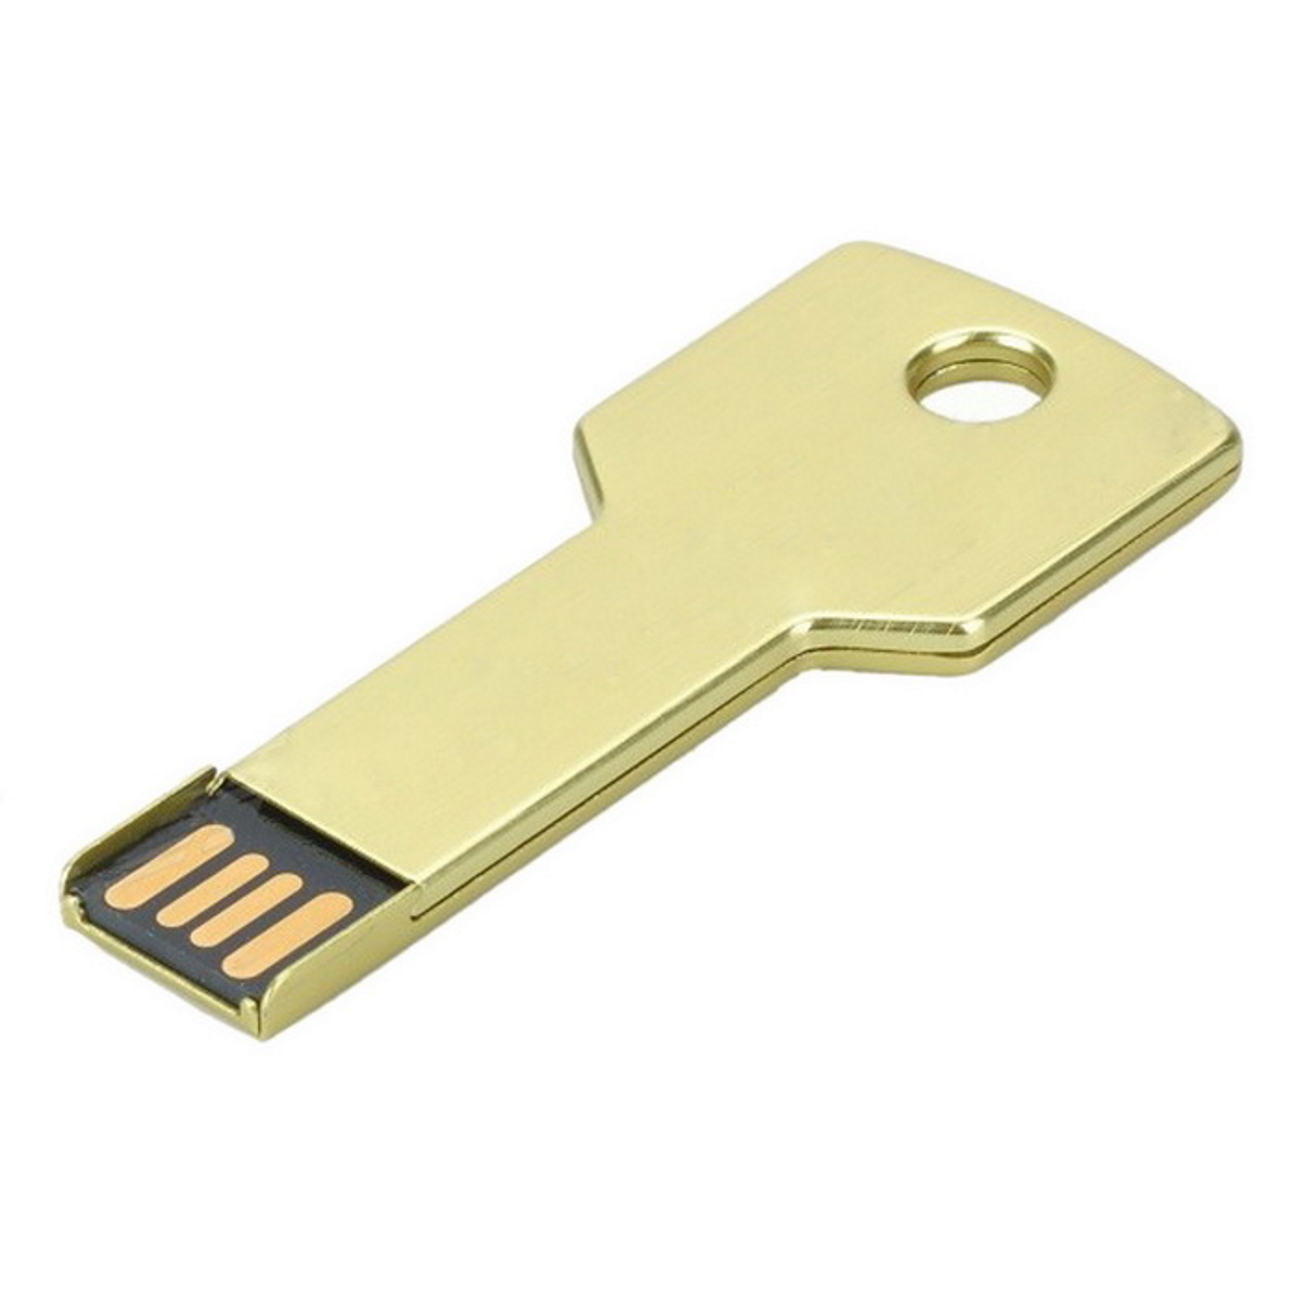 USB GERMANY Key GB) Gold 2GB USB-Stick (Gold, 2